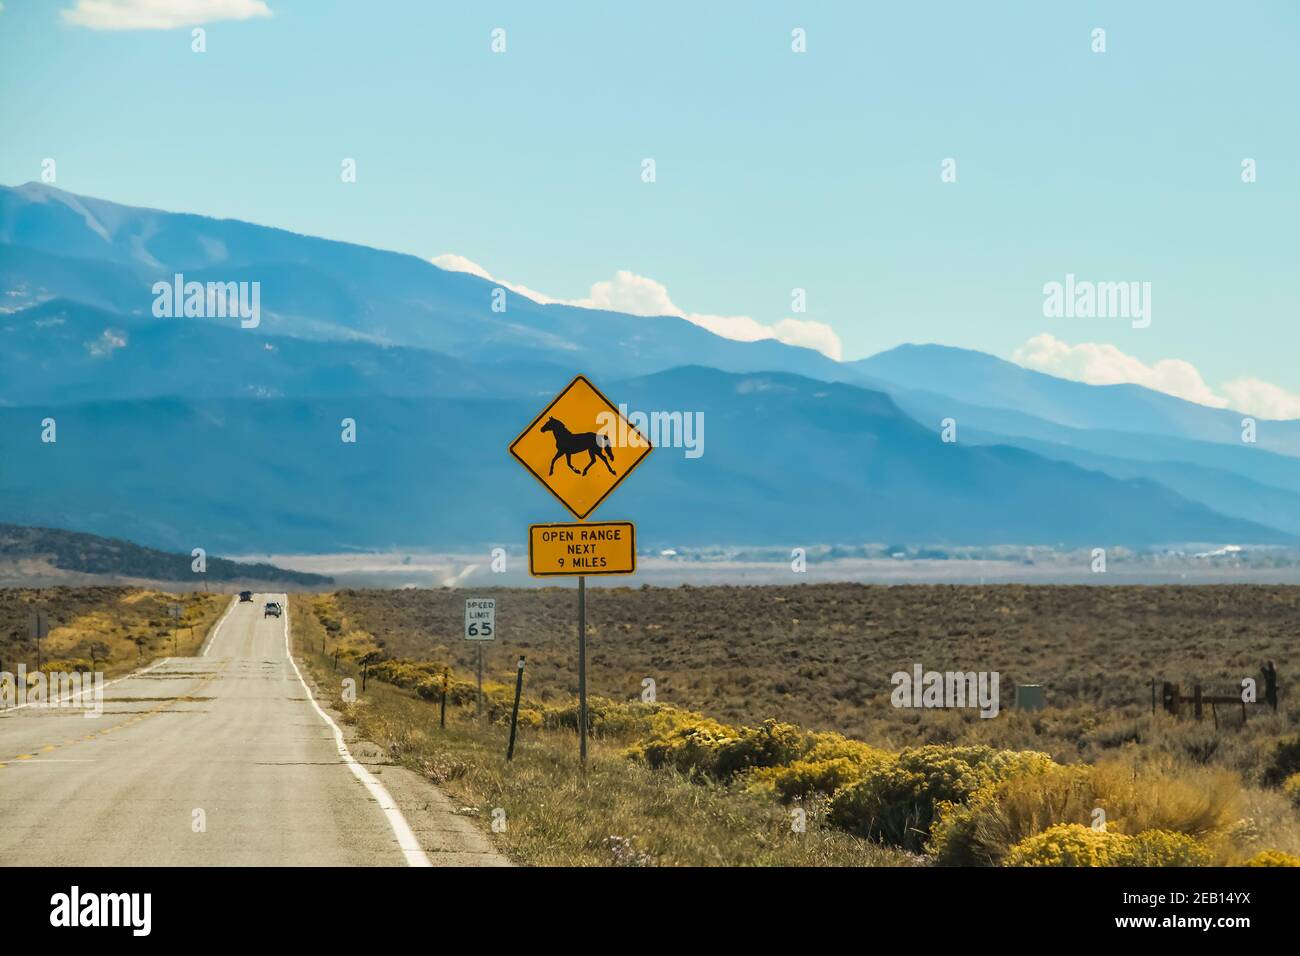 Un termoeffetto sulla strada e le vetture nel alto deserto con montagne in lontananza e un cartello Con un cavallo che dice Open Range Foto Stock